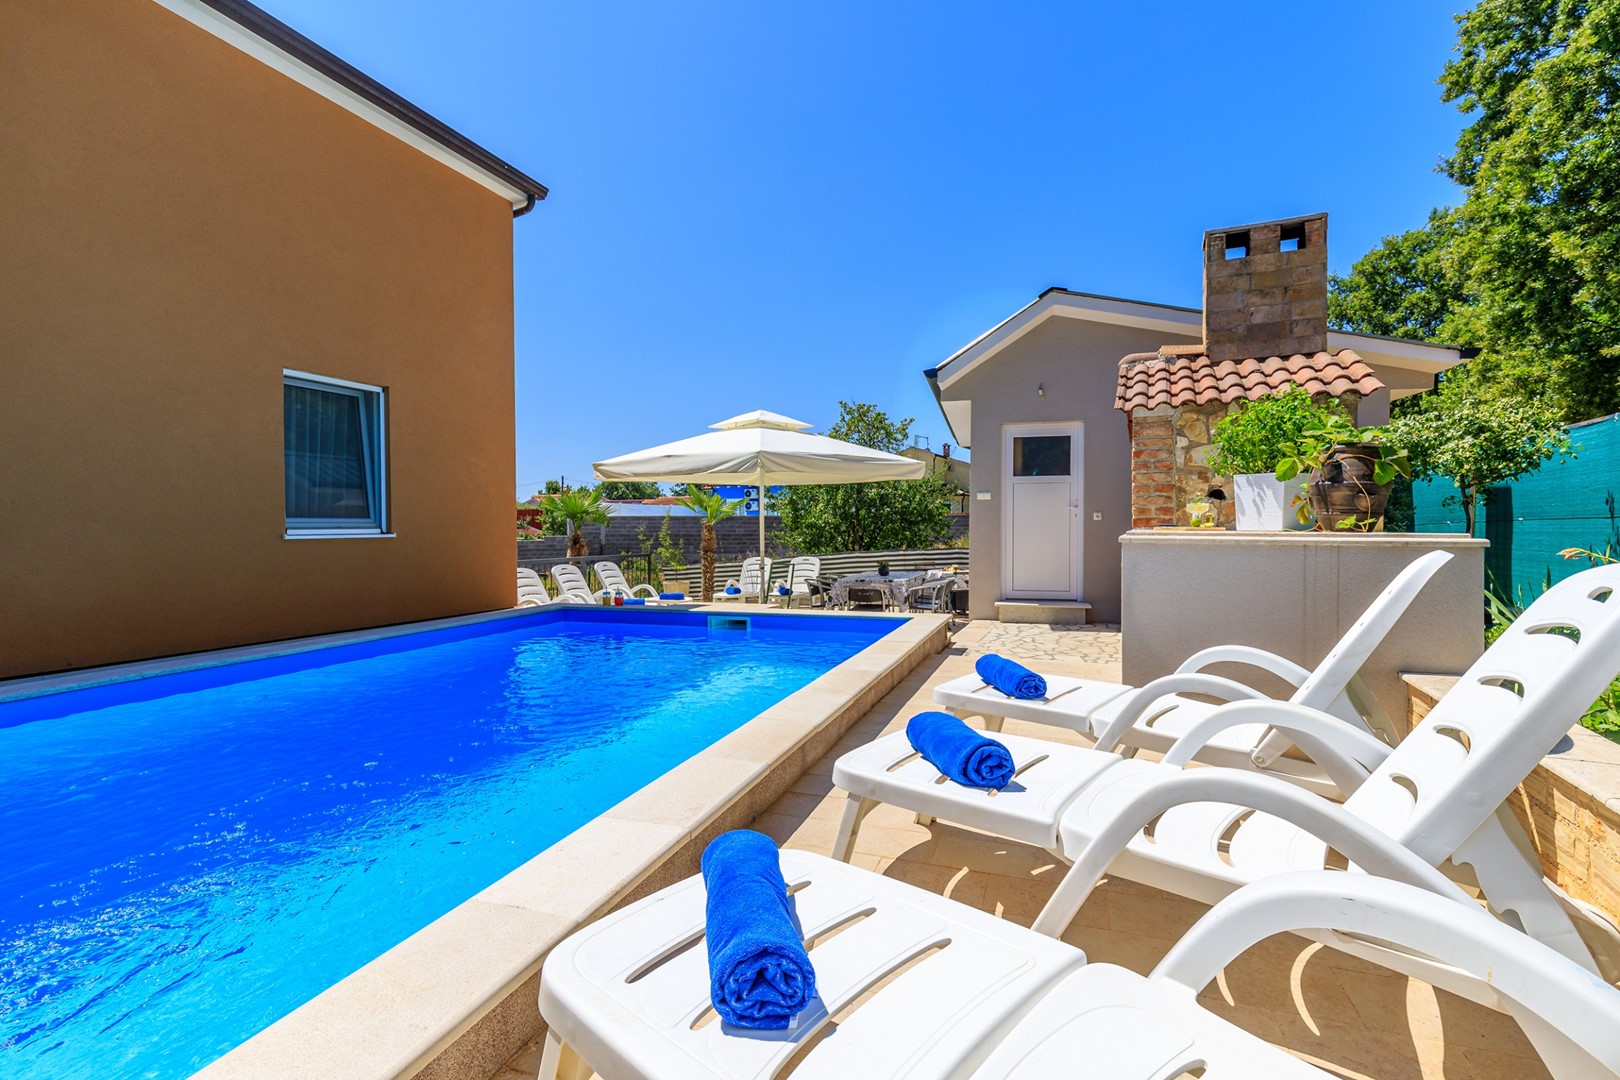 Zwei-Zimmer-Wohnung Vanessa I mit gemeinsamen Pool Ferienpark in Istrien